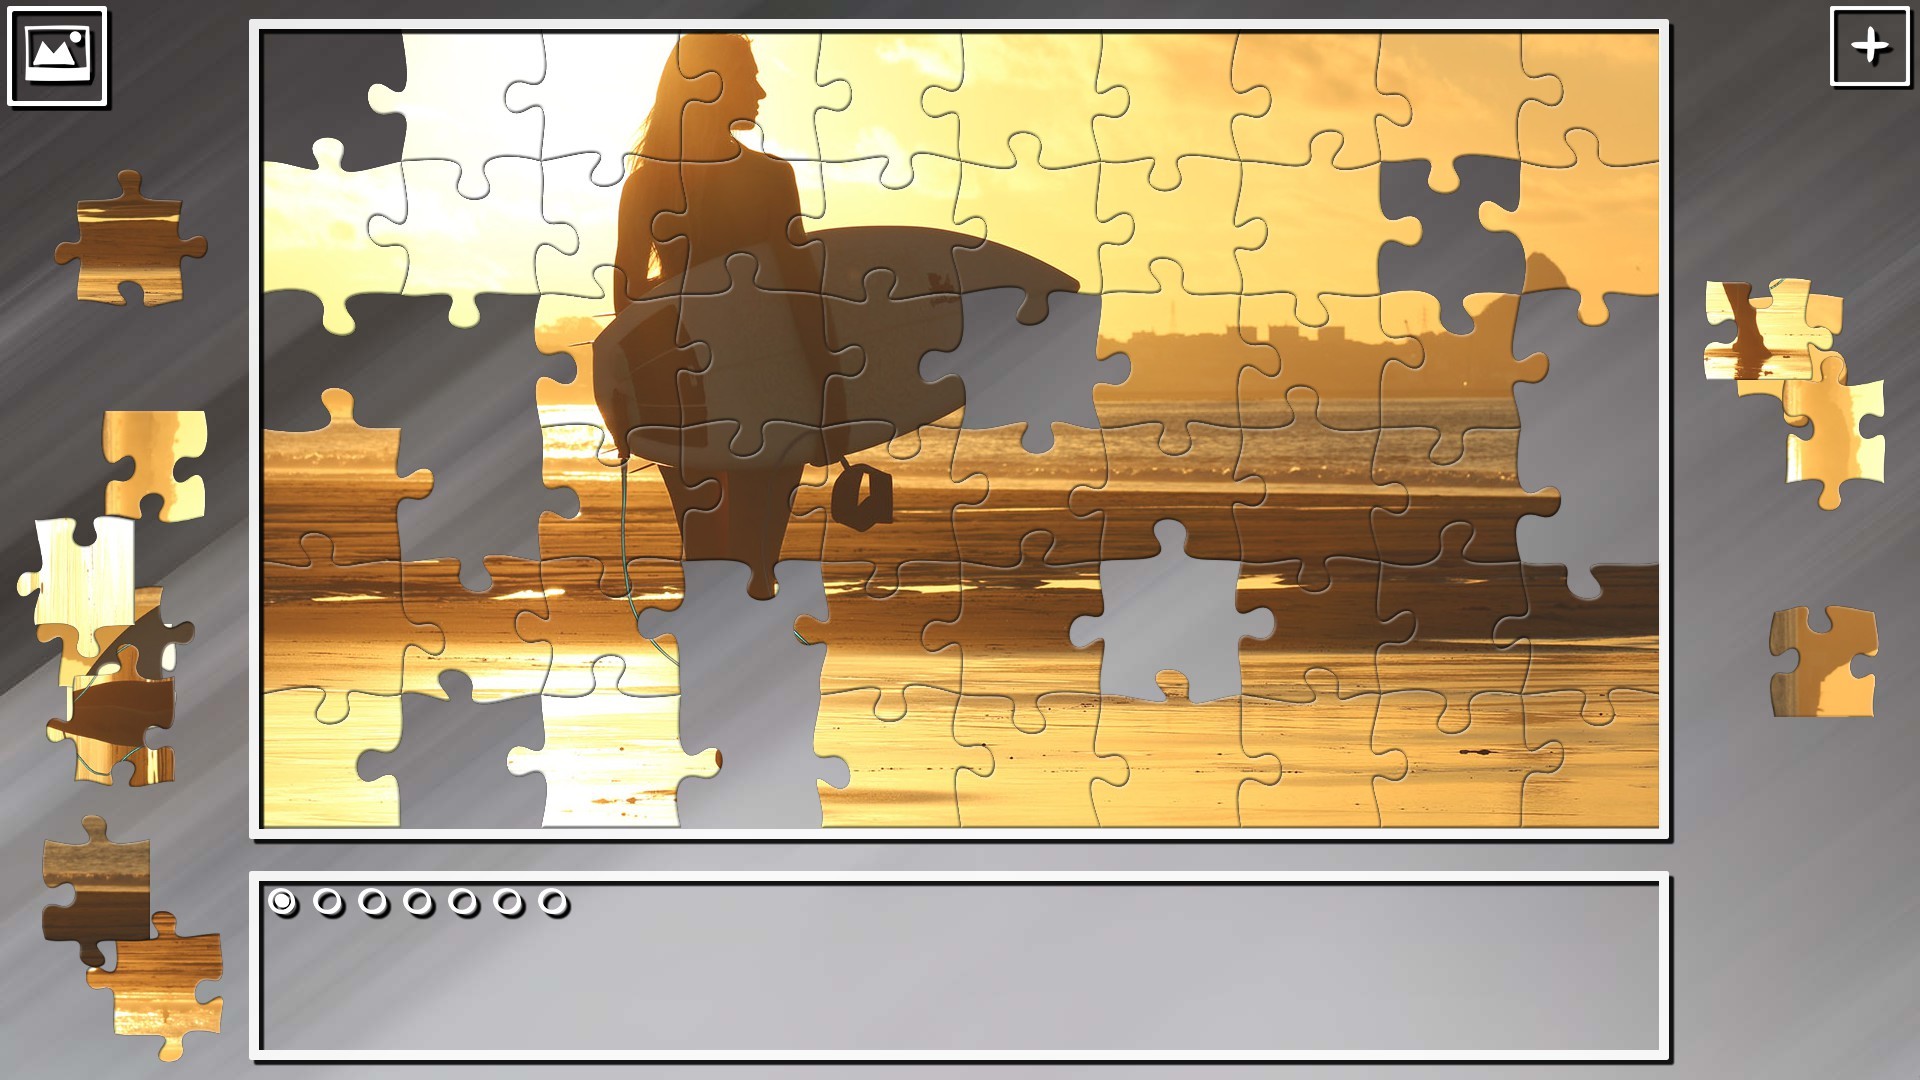 Super Jigsaw Puzzle: Generations - Summer 2020 Featured Screenshot #1